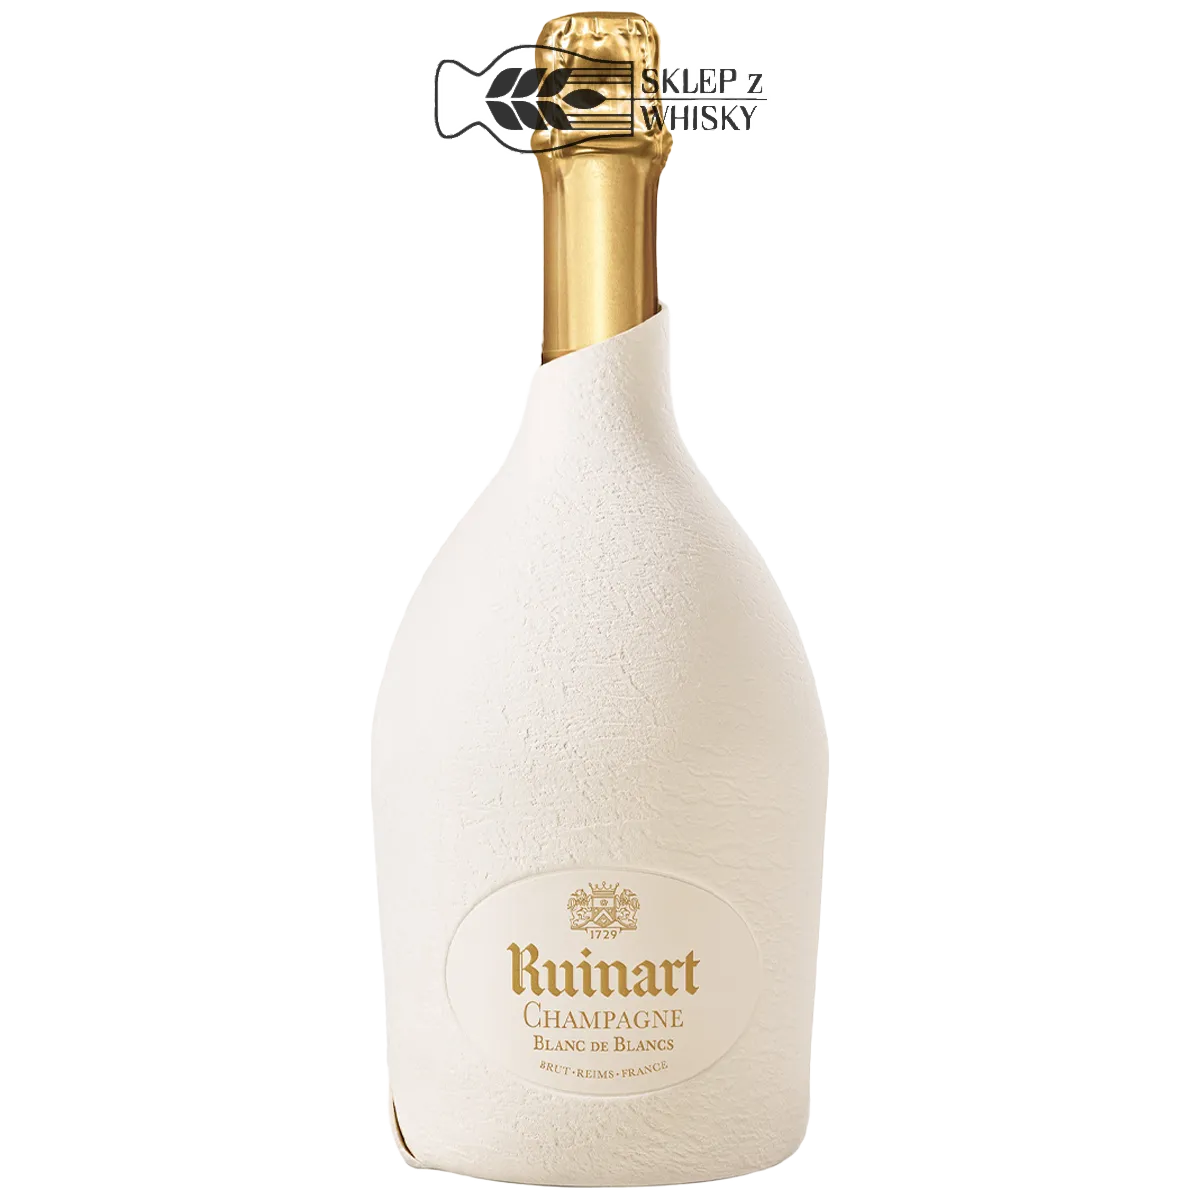 Ruinart Blanc de Blancs Second Skin - szampan biały wytrawny, 750 ml